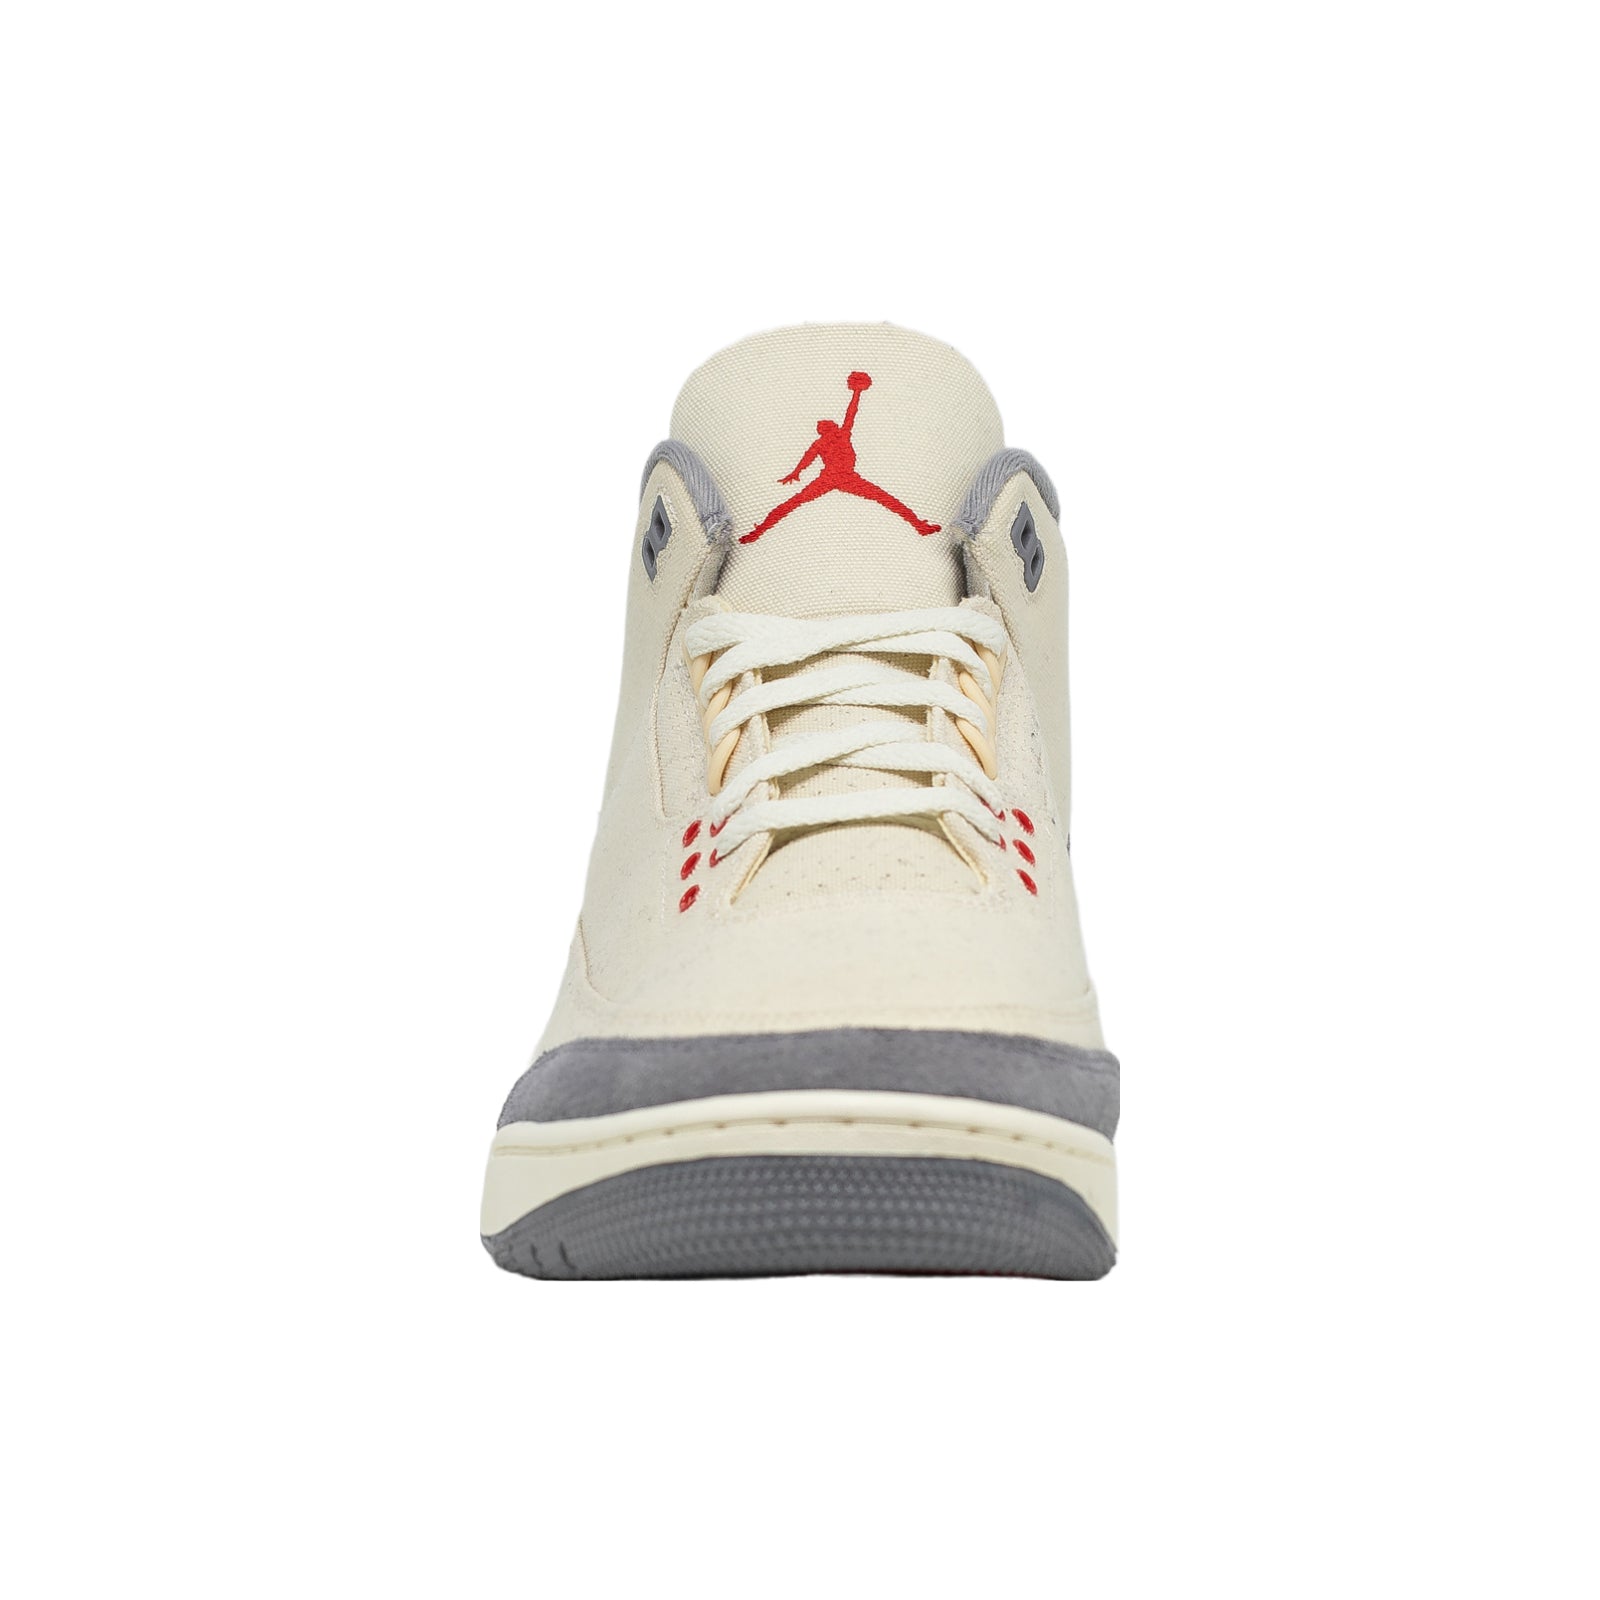 Air Jordan 3, Muslin